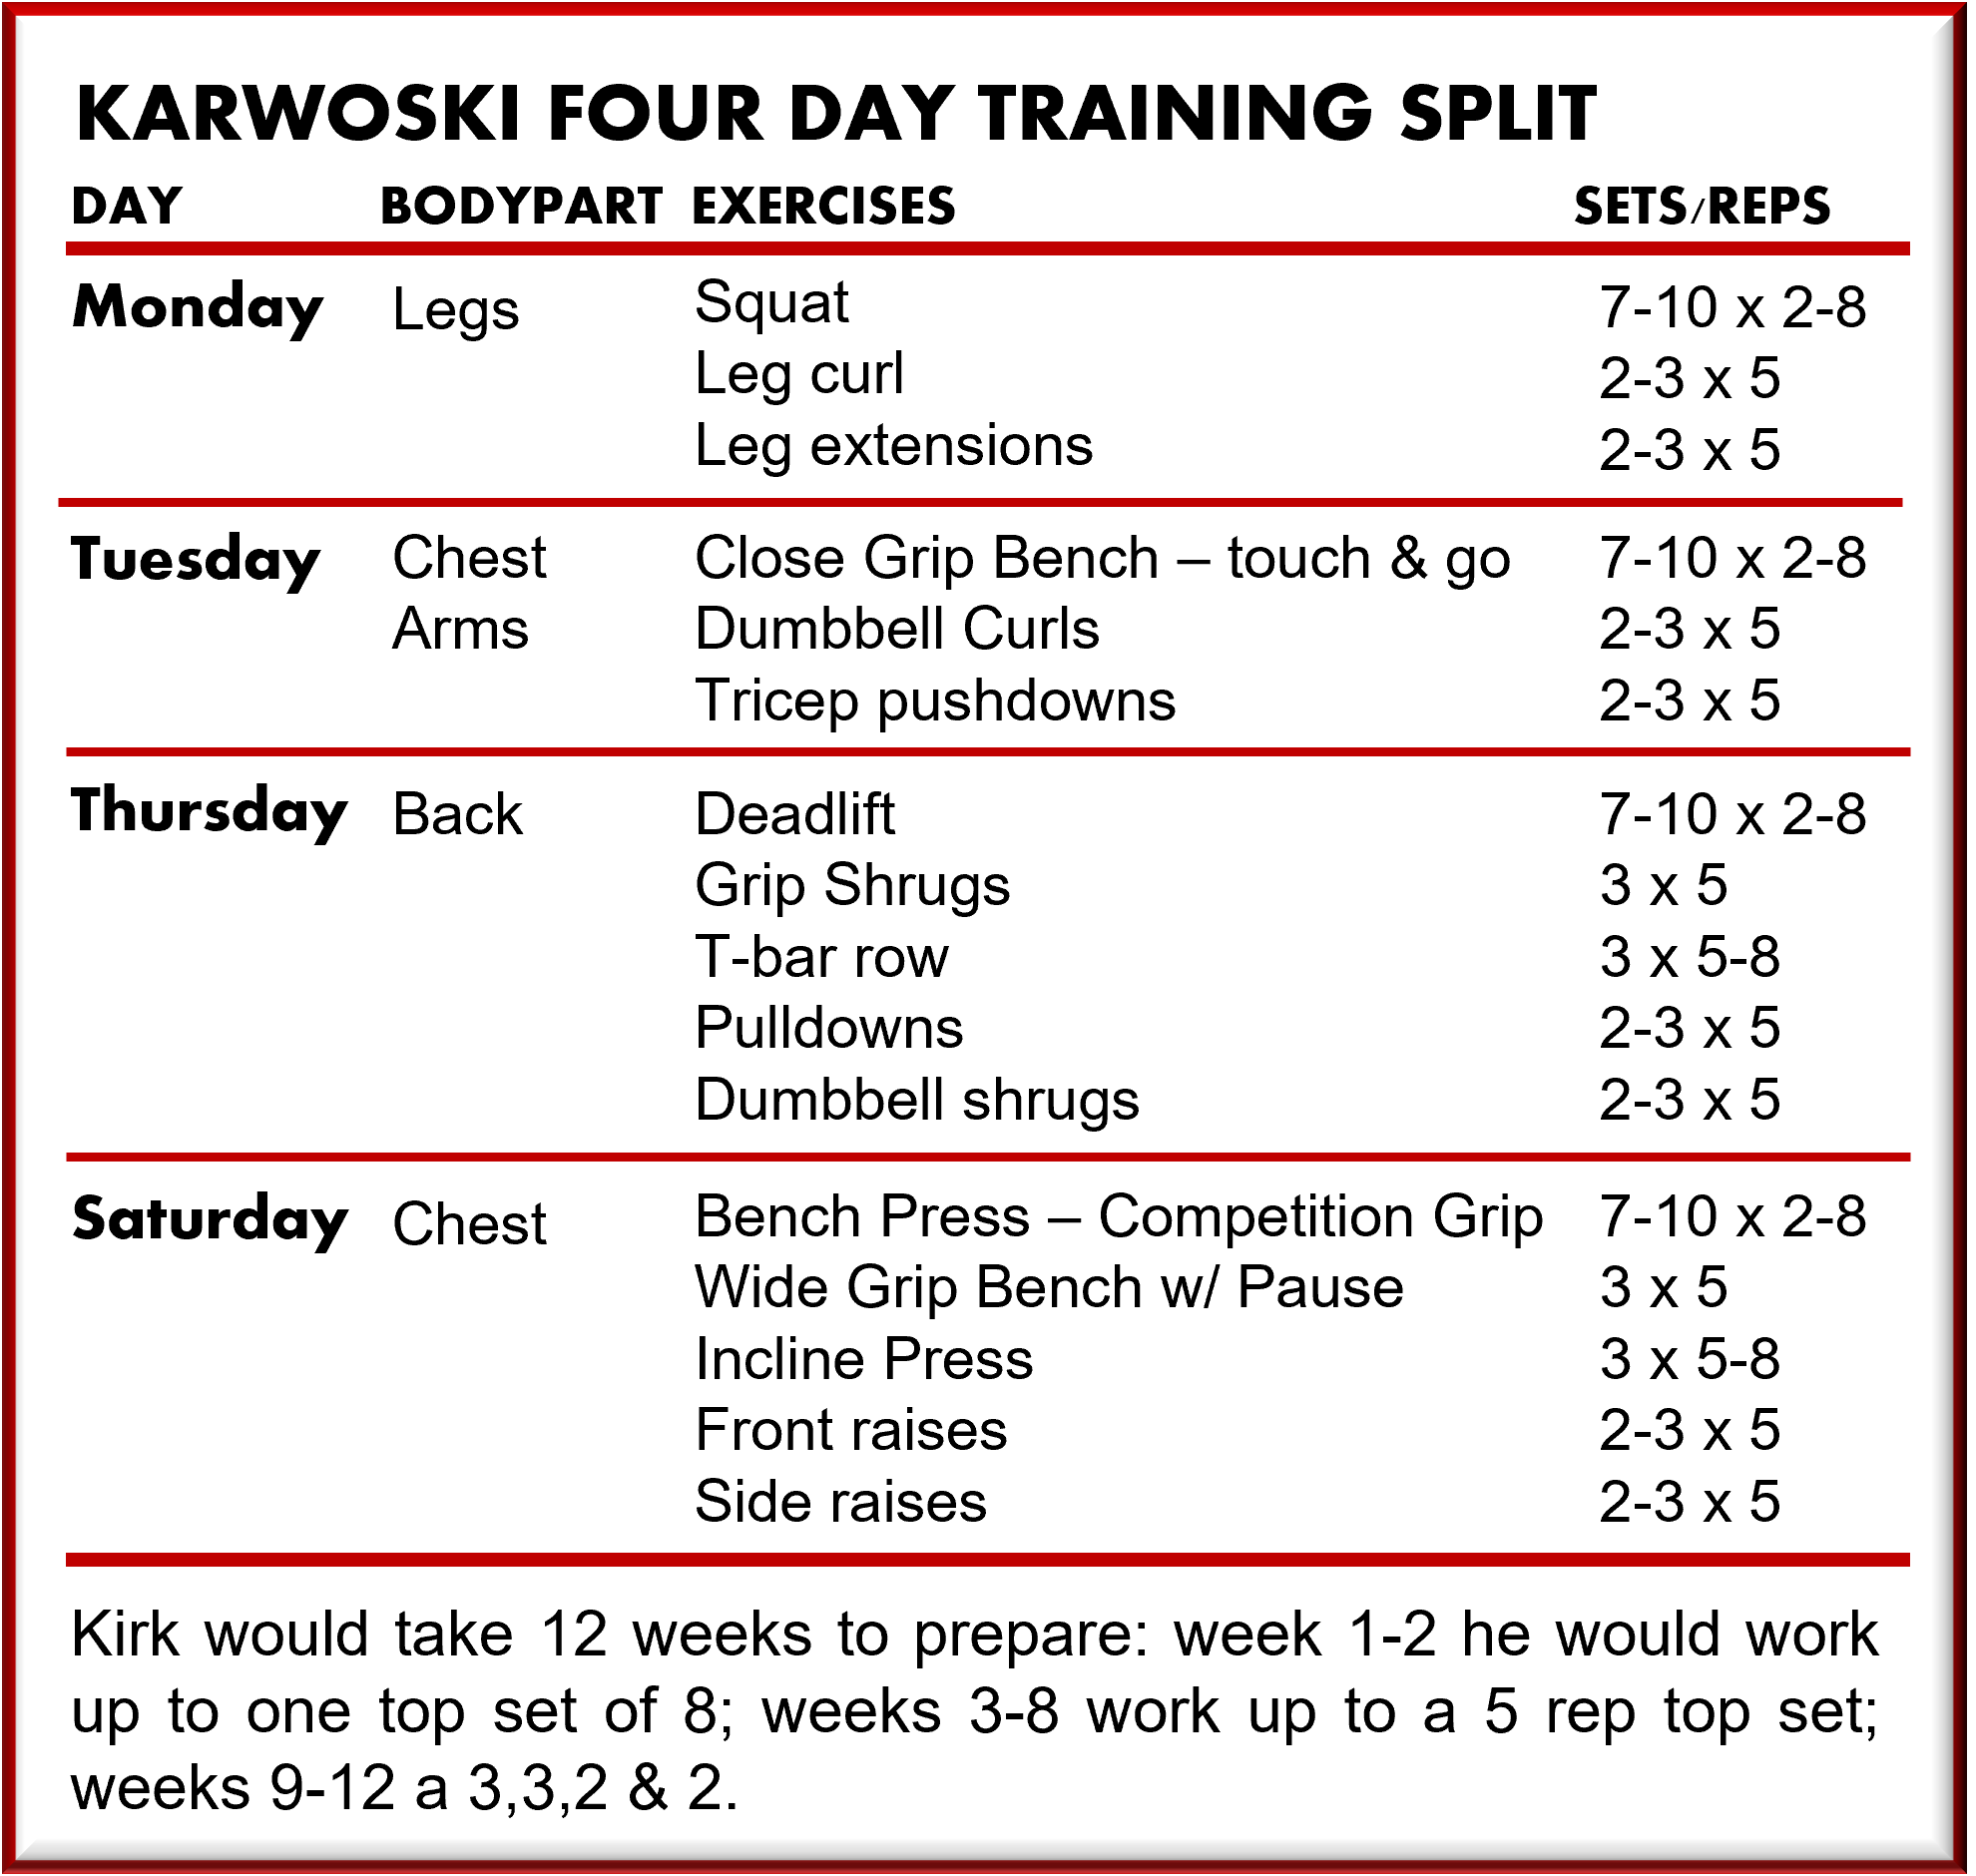 Kirk Karwoski